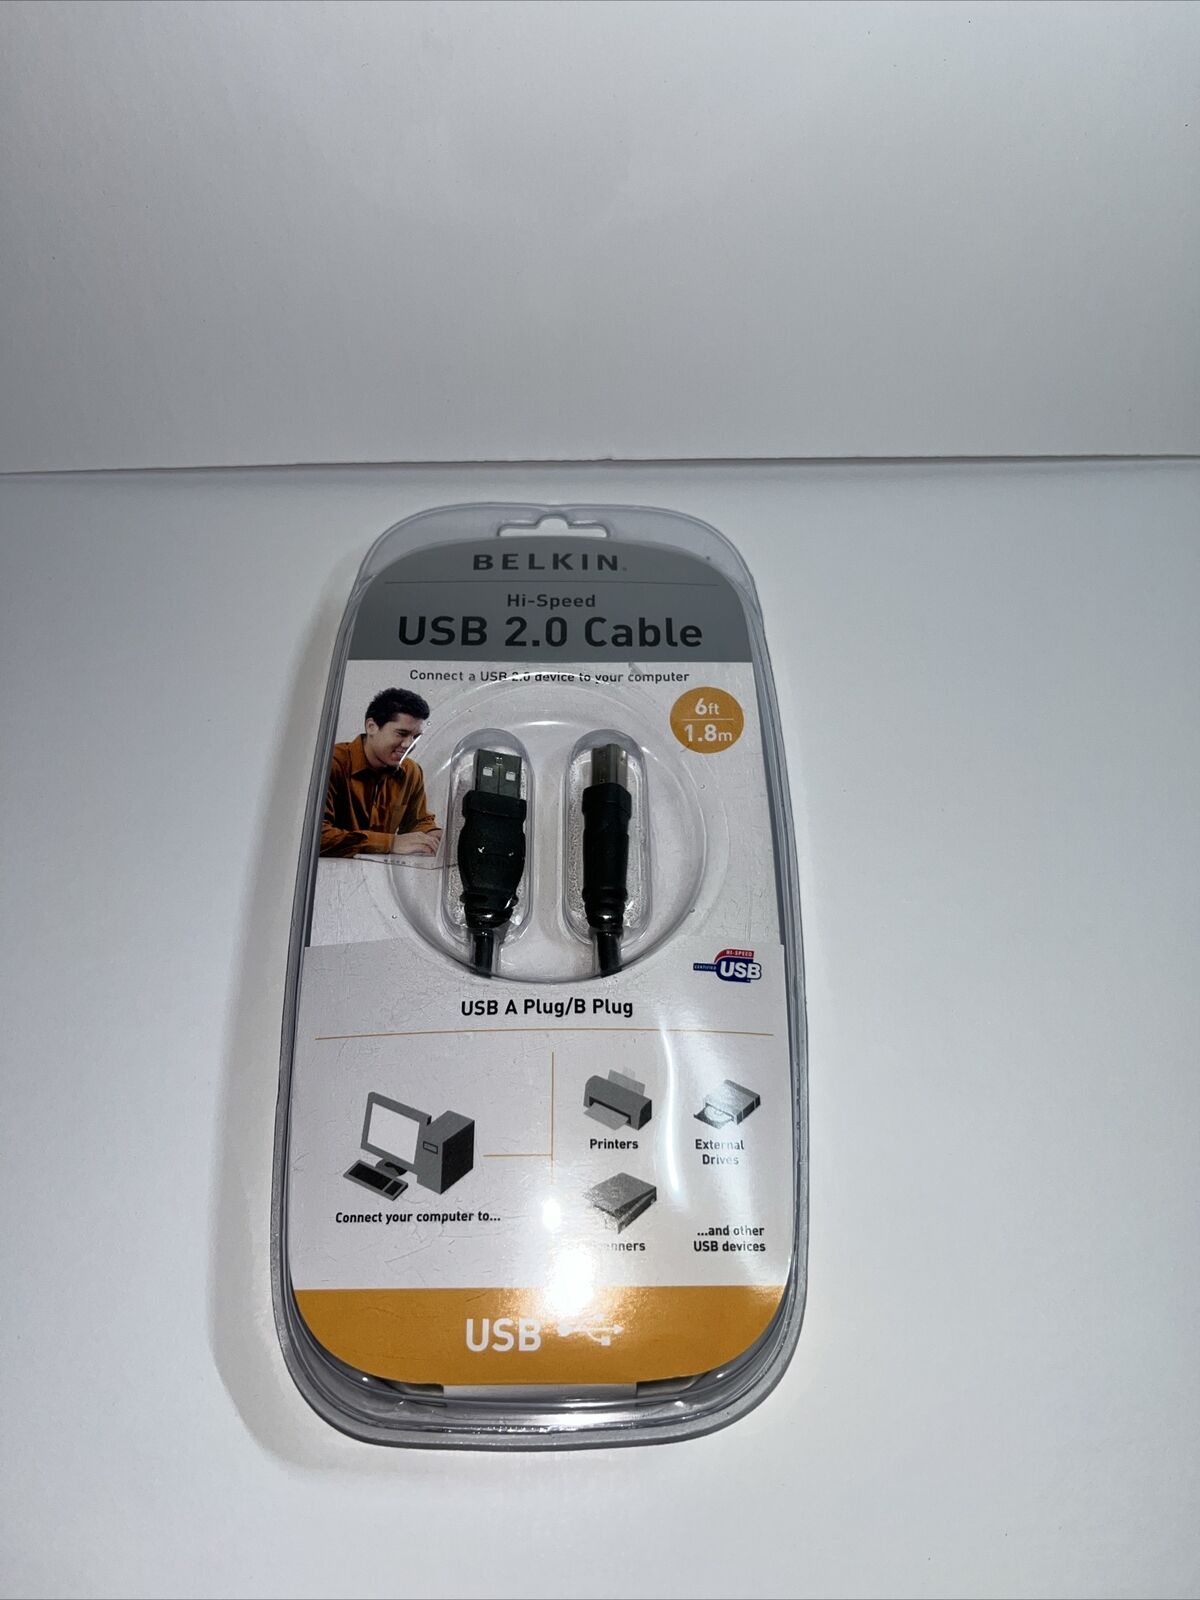 Belkin NEW Hi Speed USB 2.0 Cable 6 Ft. USB A Plug B Plug F3U133v06